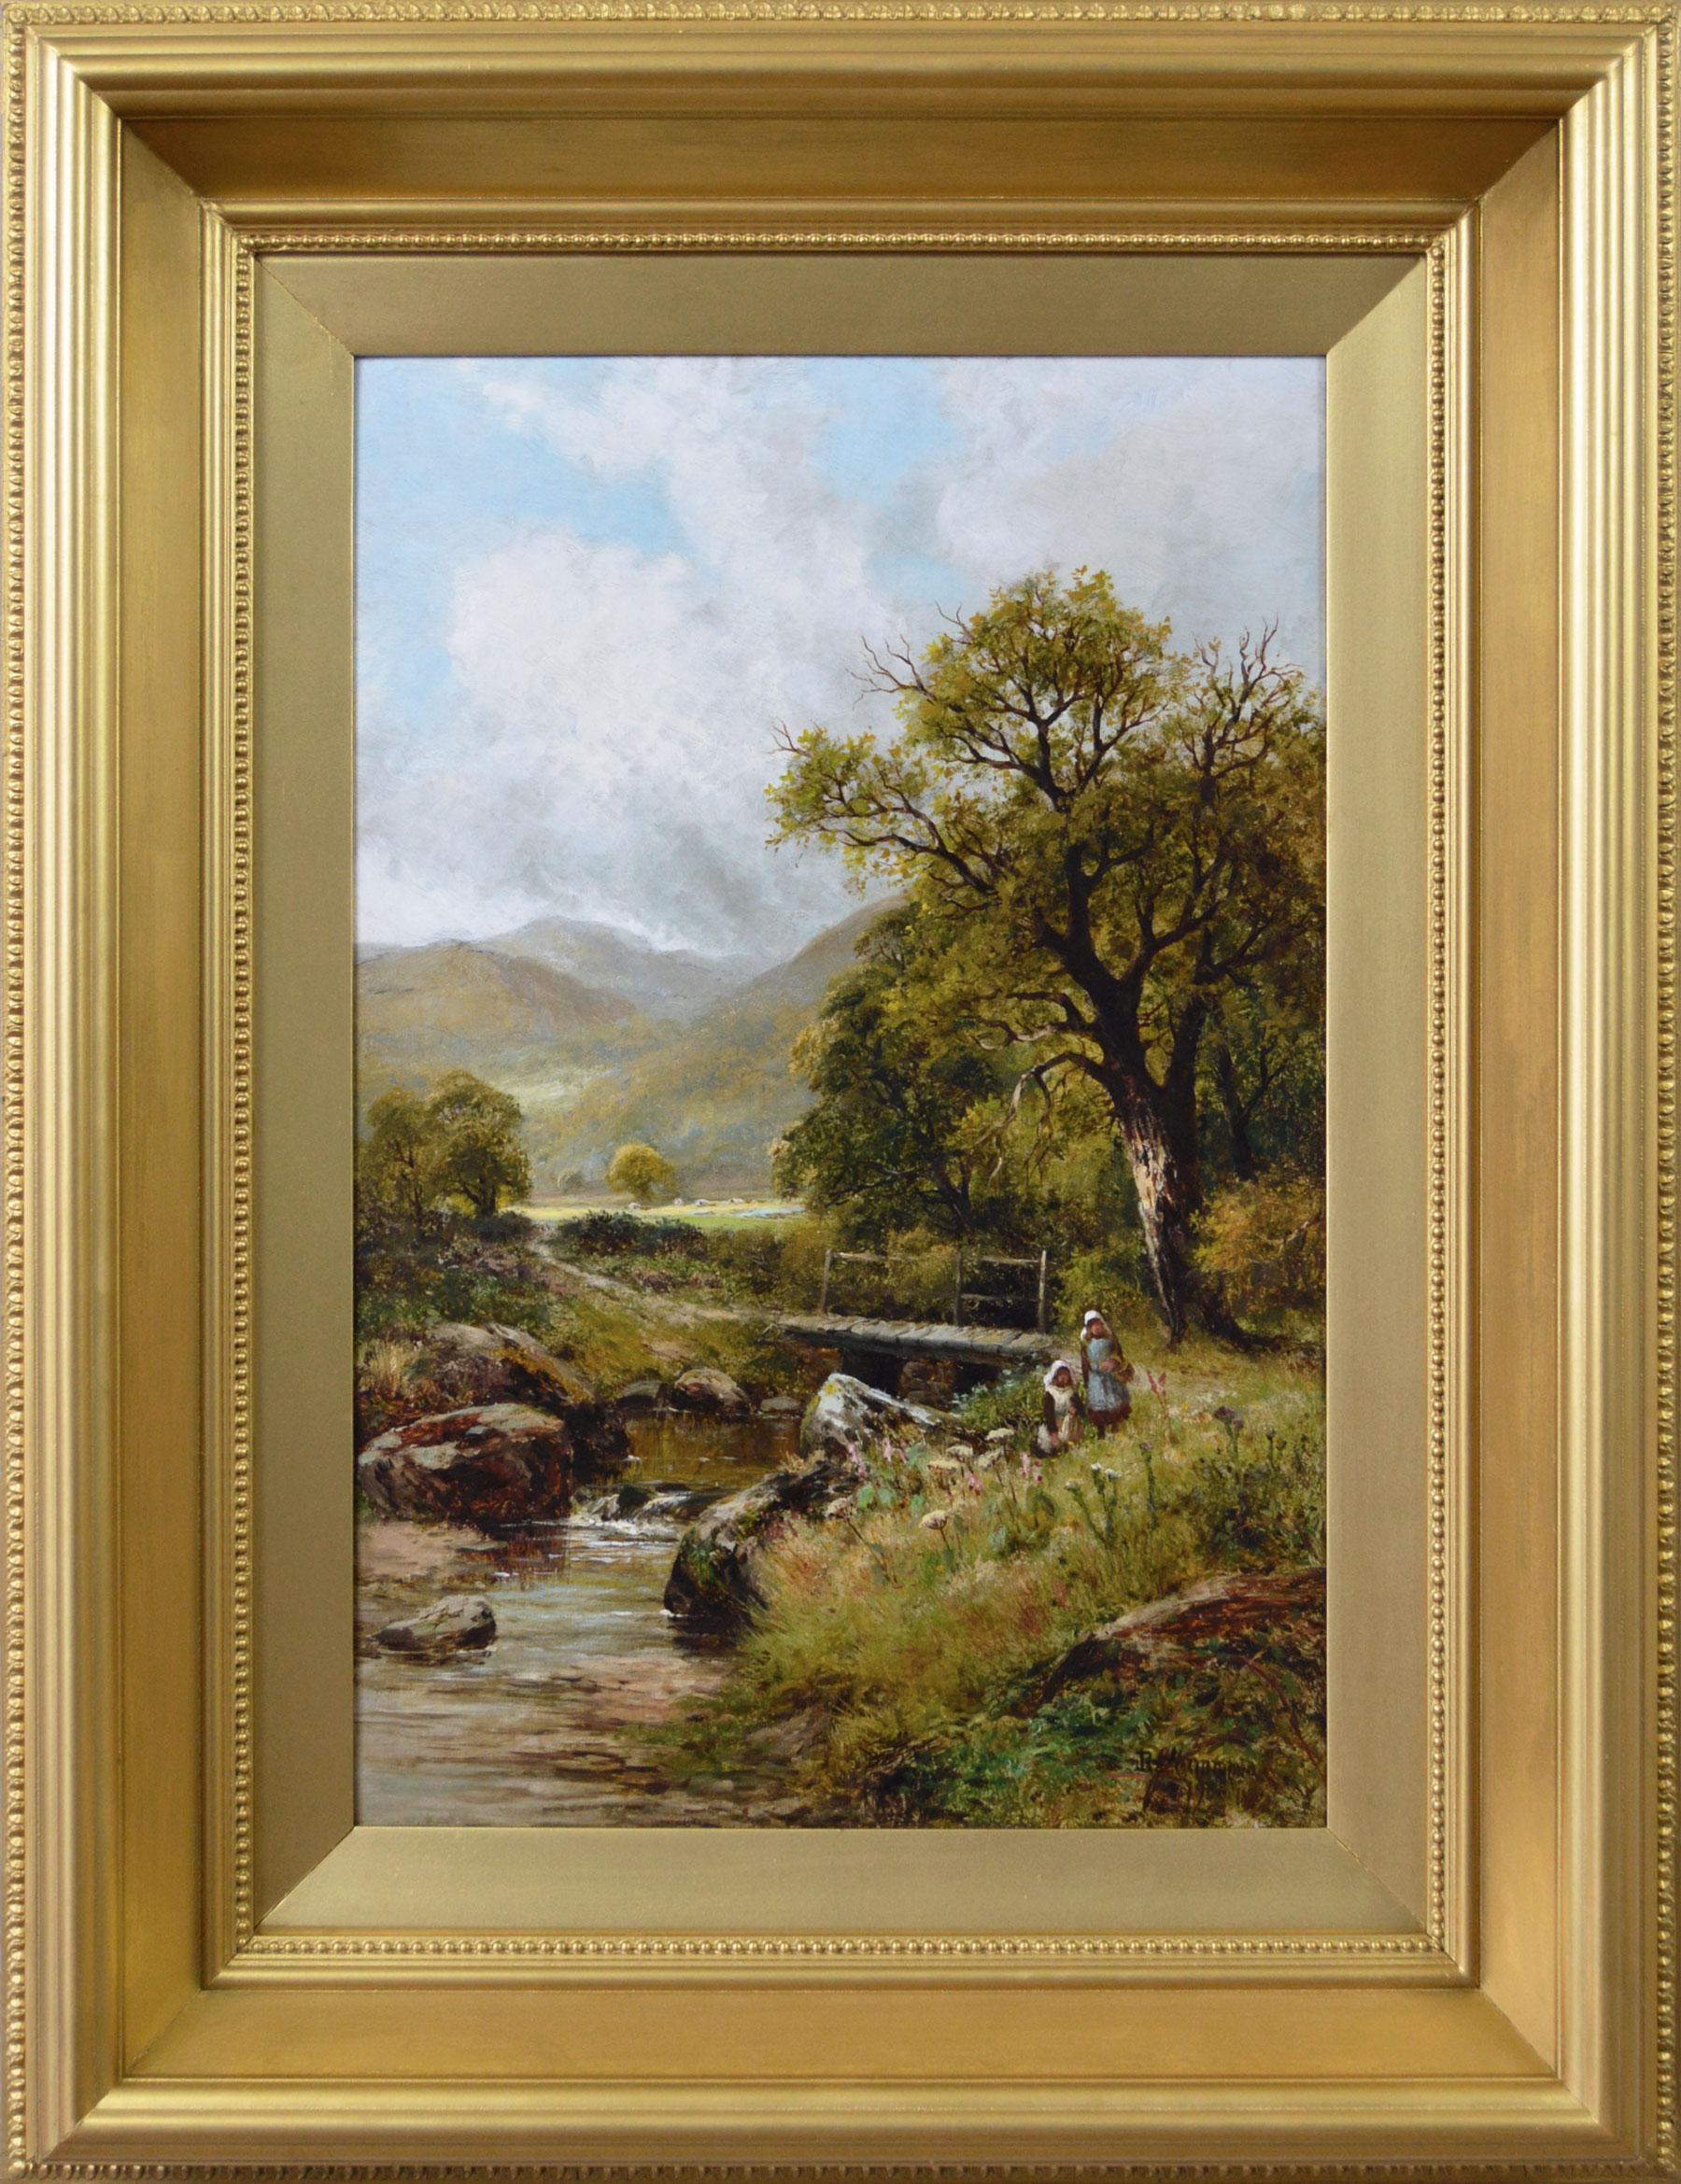 Landscape Painting Robert John Hammond - Peinture à l'huile de paysage du 19e siècle représentant des personnages cueillant des fleurs au bord d'une rivière